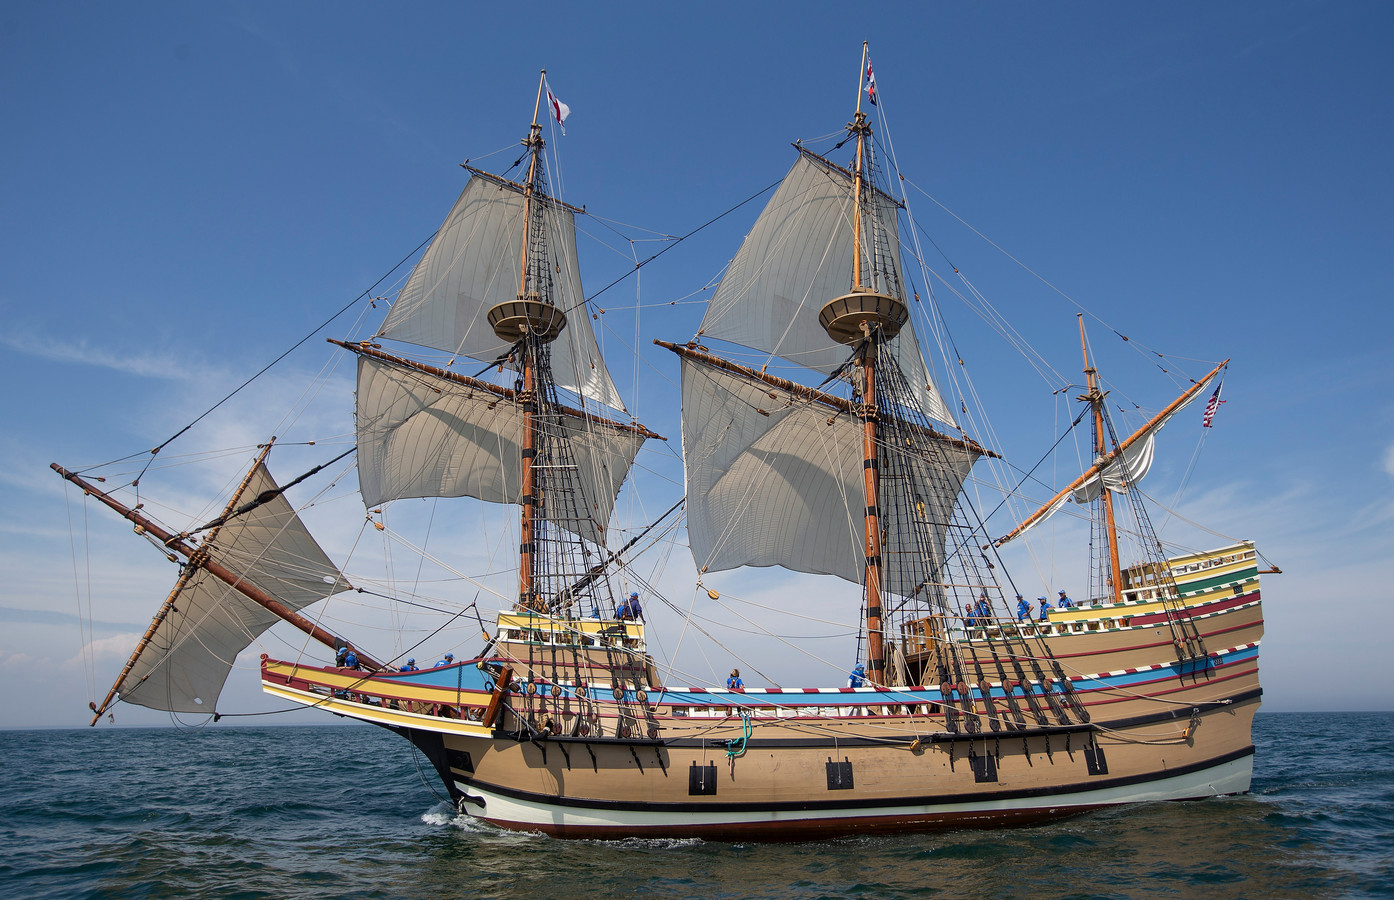 De Mayflower II, een replica van de originele Mayflower, die in 1620 van Engeland naar Amerika voer met Britse emigranten, die op hun bestemming in vrijheid een nieuw bestaan wilden uitbouwen.